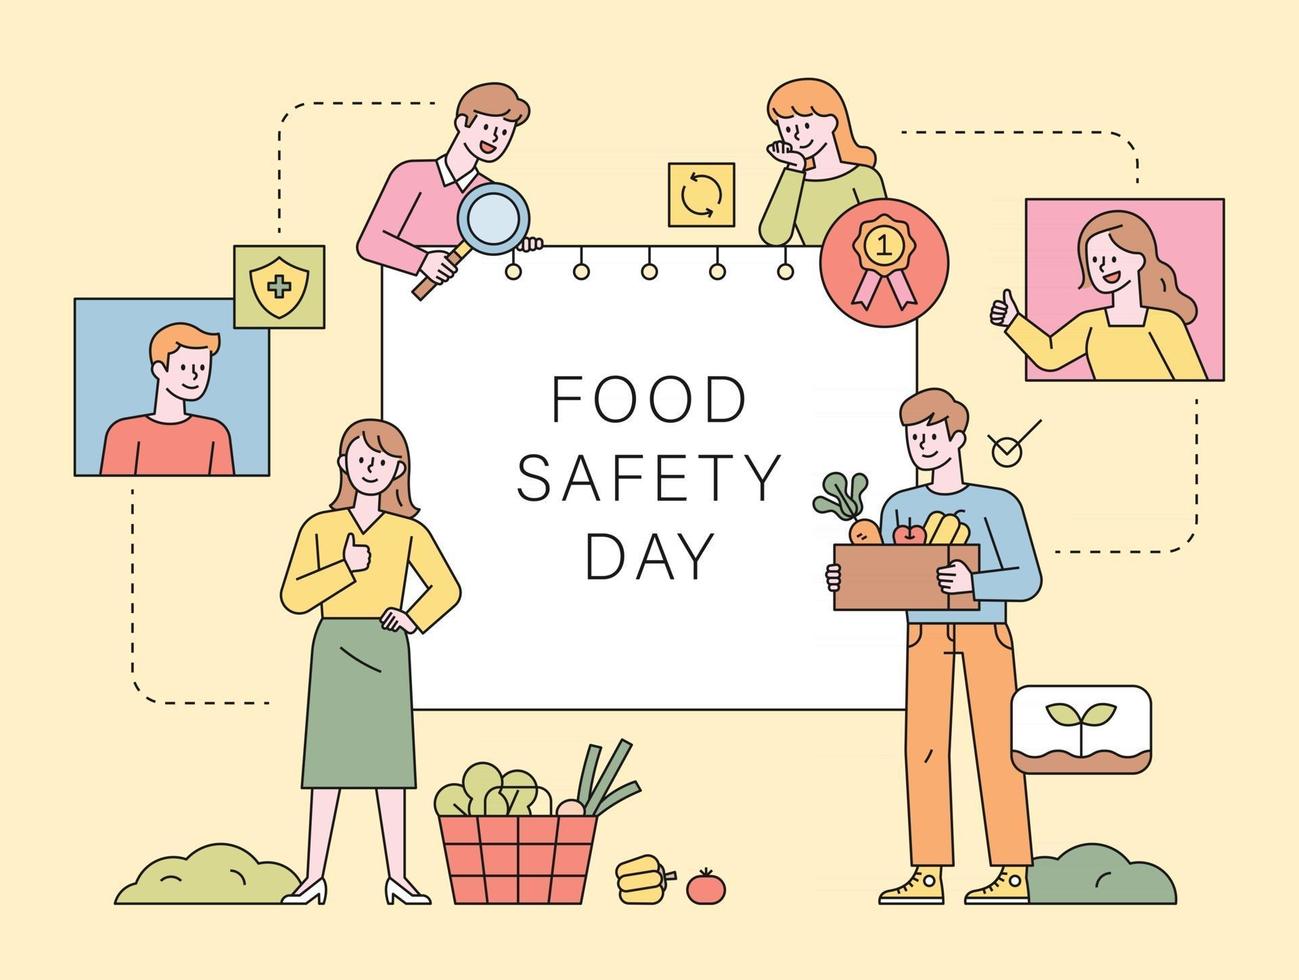 dia de segurança alimentar. clientes que procuram alimentos saudáveis e seguros vetor